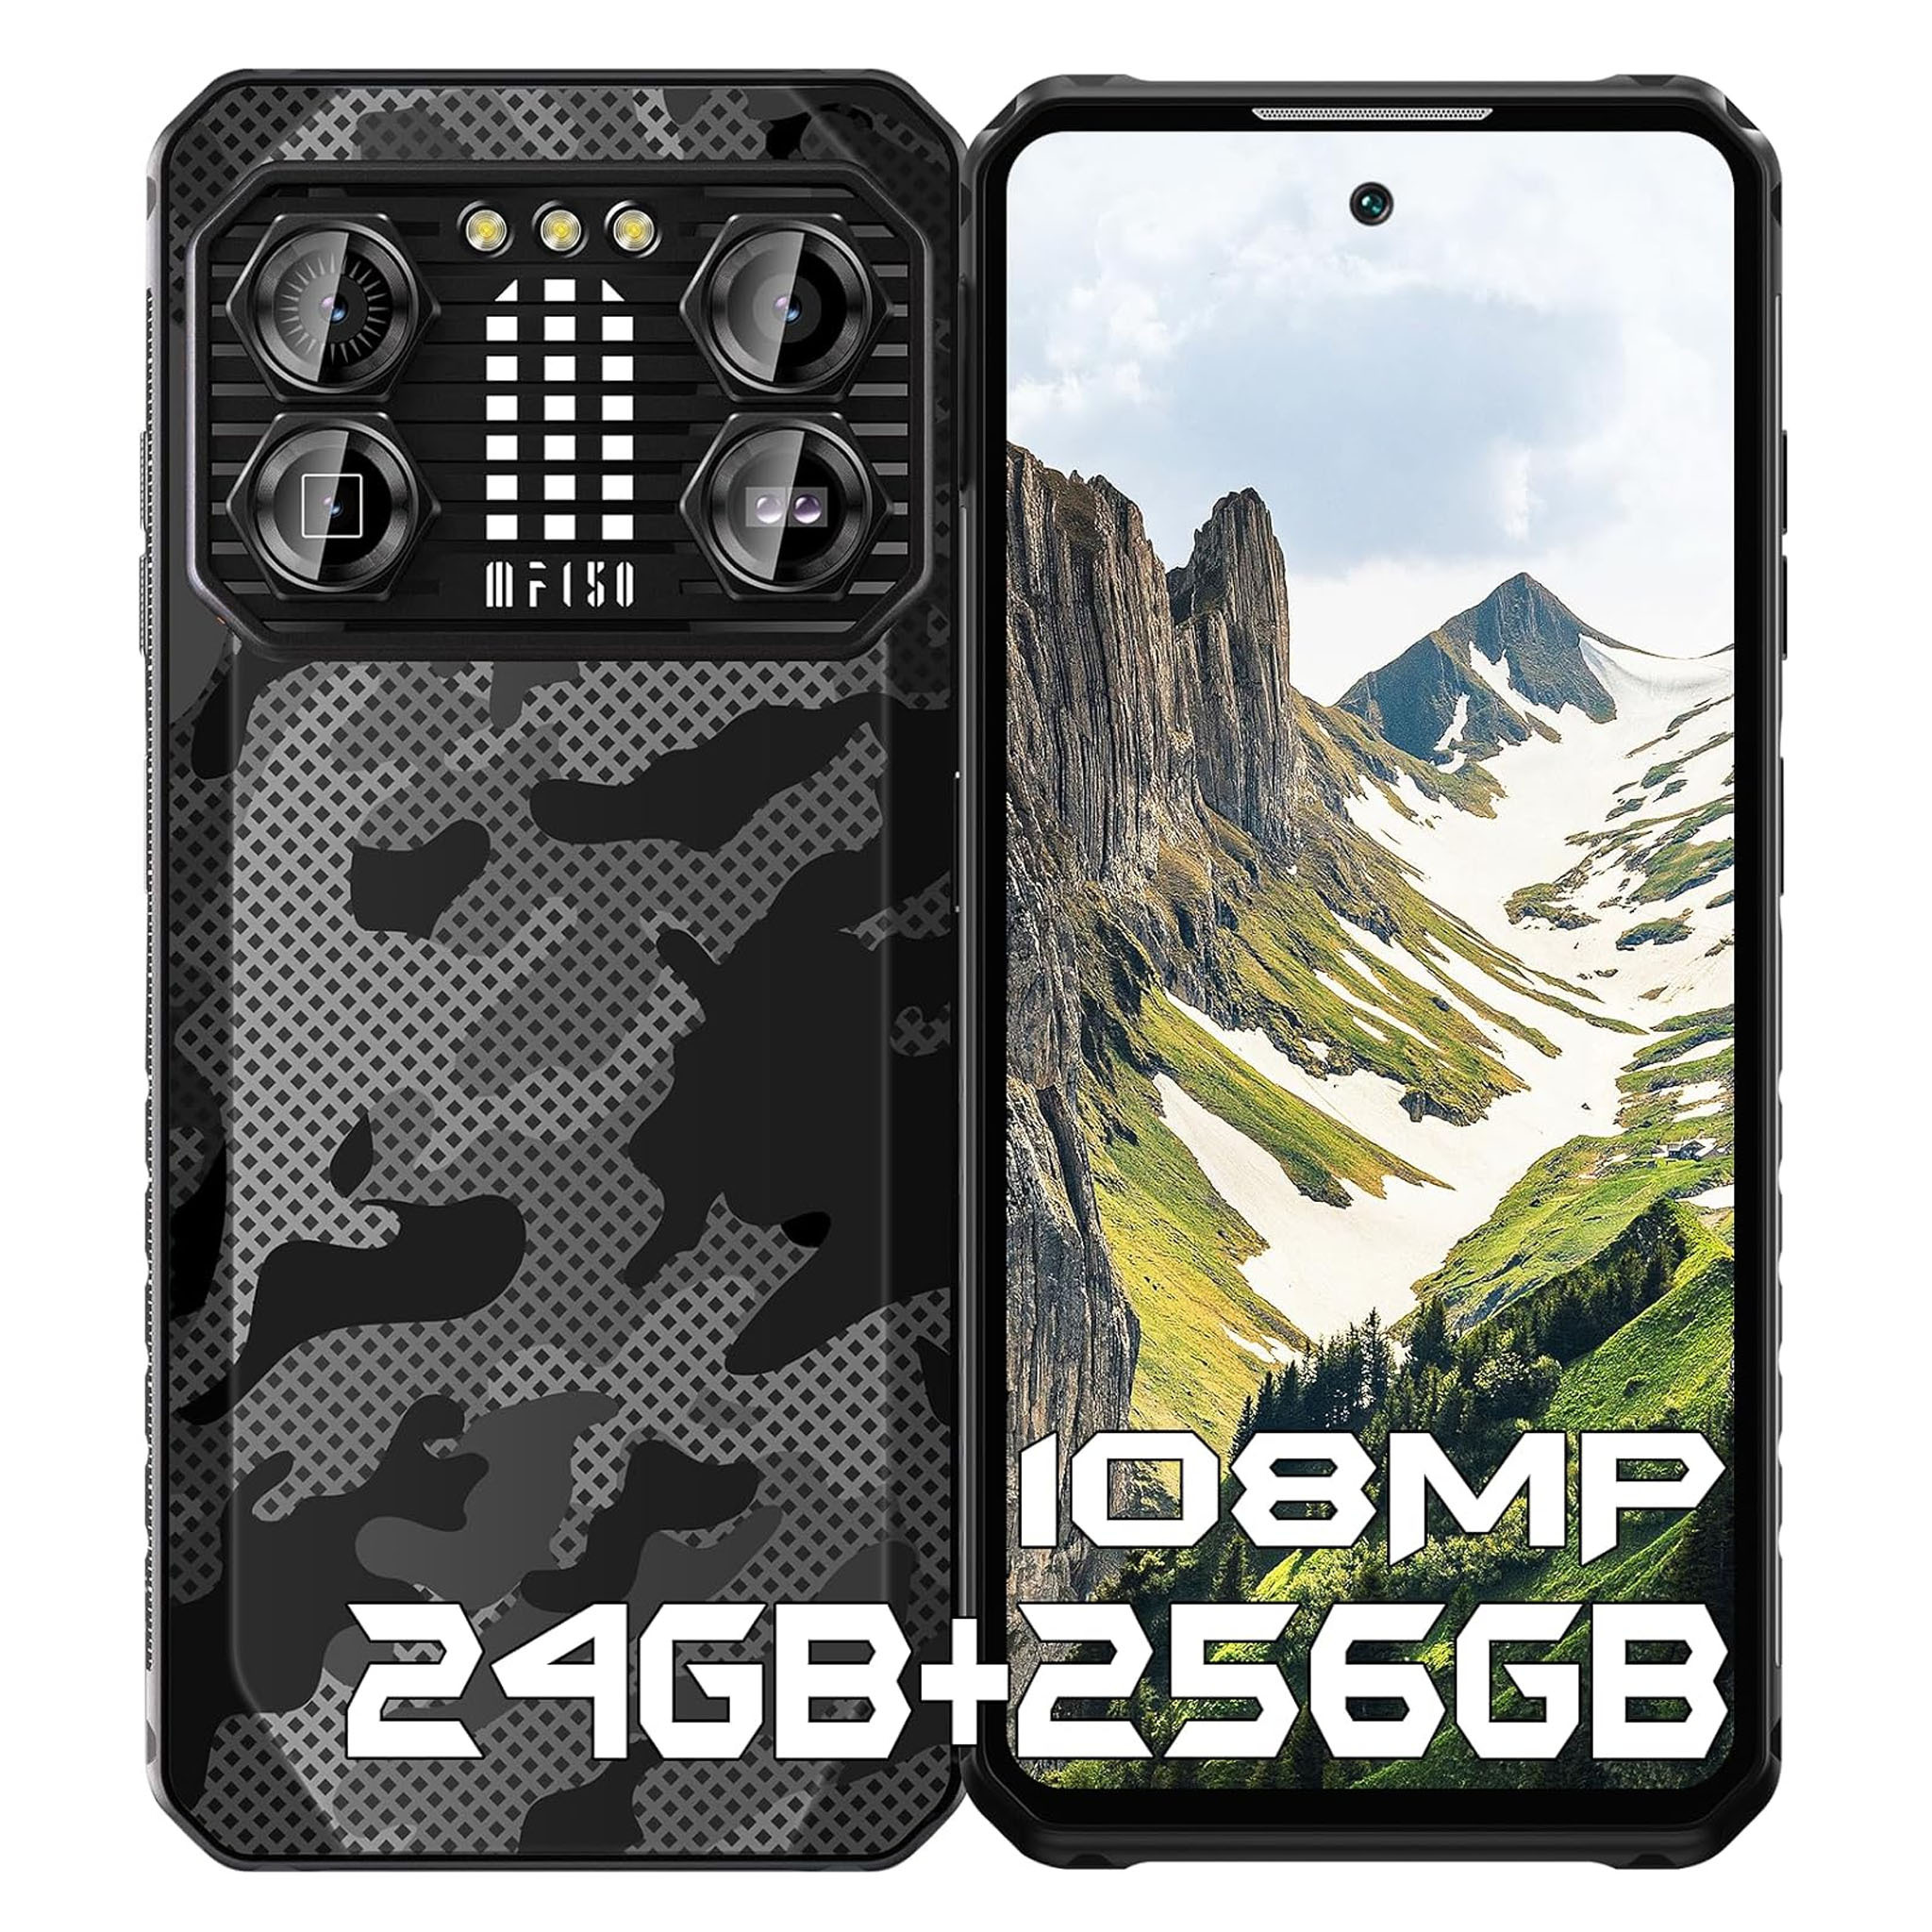 IIIF150 B2 Pro vonkajší smartfón 24GB+256GB/1TB TF 10000mAh vonkajší mobilný telefón Android 13, 108MP+24MP nočné videnie 120Hz 6,78" FHD+, čierny